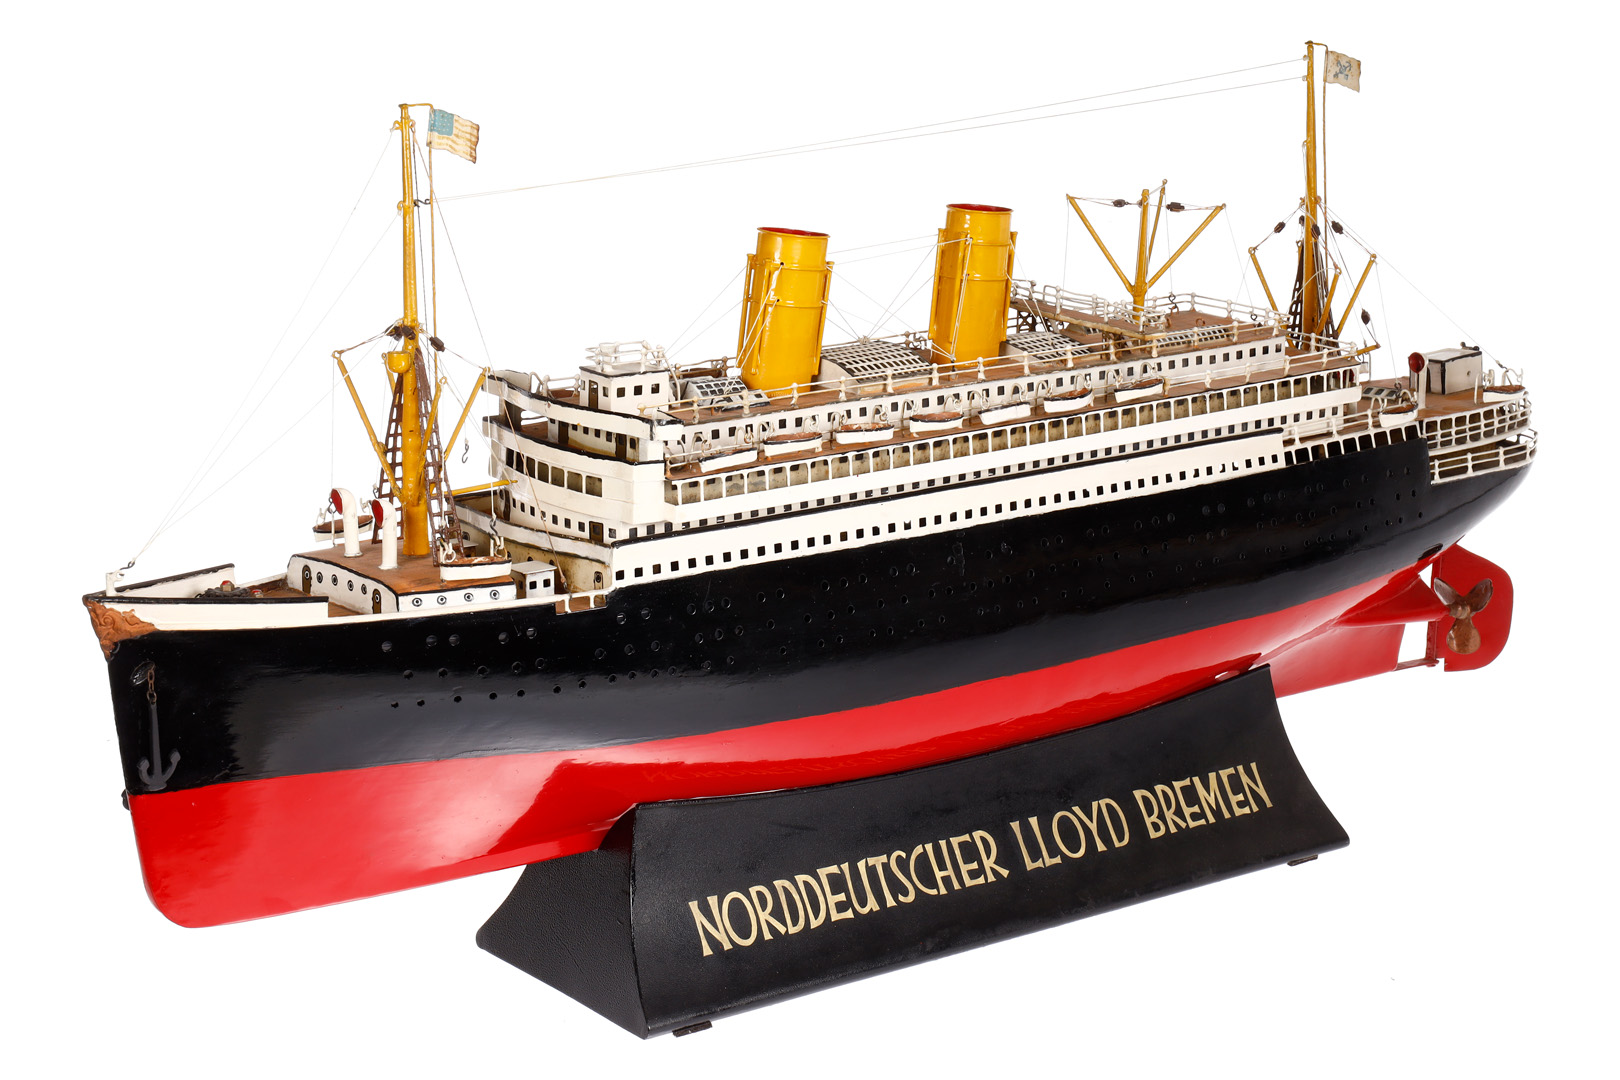 Märklin Reisebüro-Modell ”Norddeutscher Lloyd Bremen”, mit Passagierdampfer, 2-Schrauben-Dampfer,